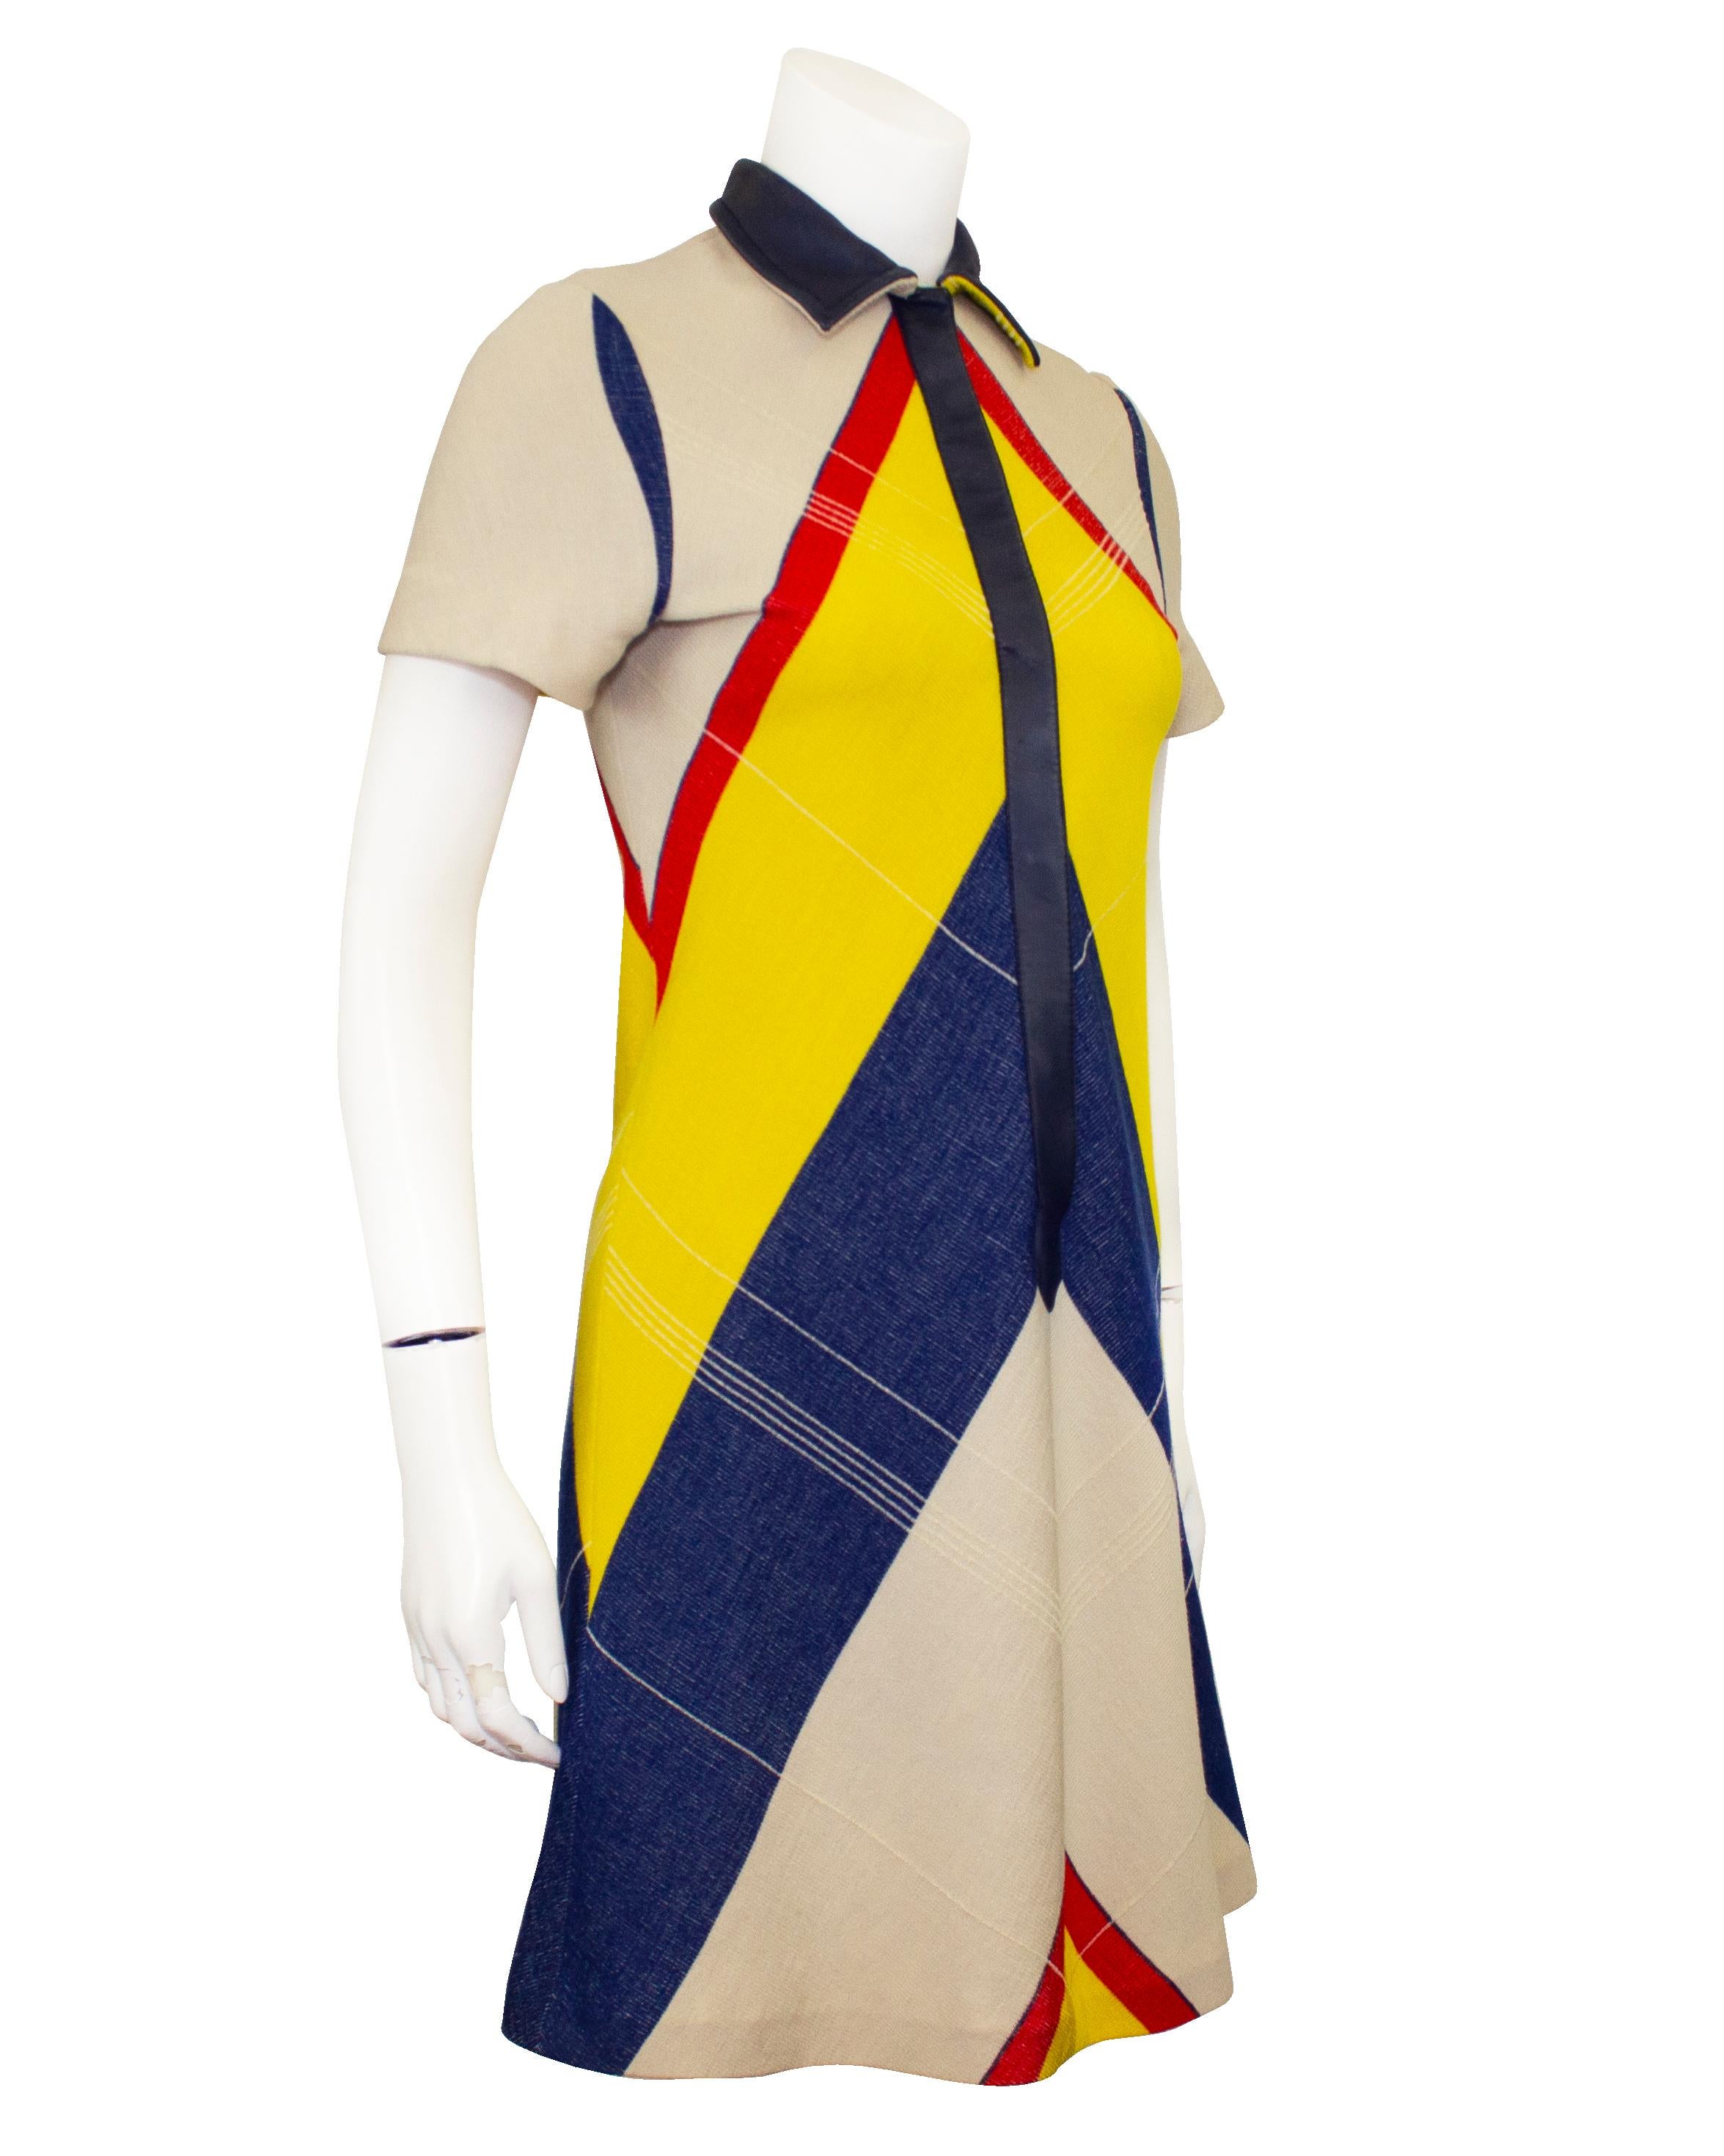 Bezauberndes Etuikleid mit Kragen aus einer Woll-Baumwollmischung aus der Mod-Look-Ära der 1960er Jahre. Das gelb-rot-marinefarbene Chevron-Muster unterstreicht die ausgestellte Form des Kleides. Mit Druckknöpfen an der Vorderseite und einer mit